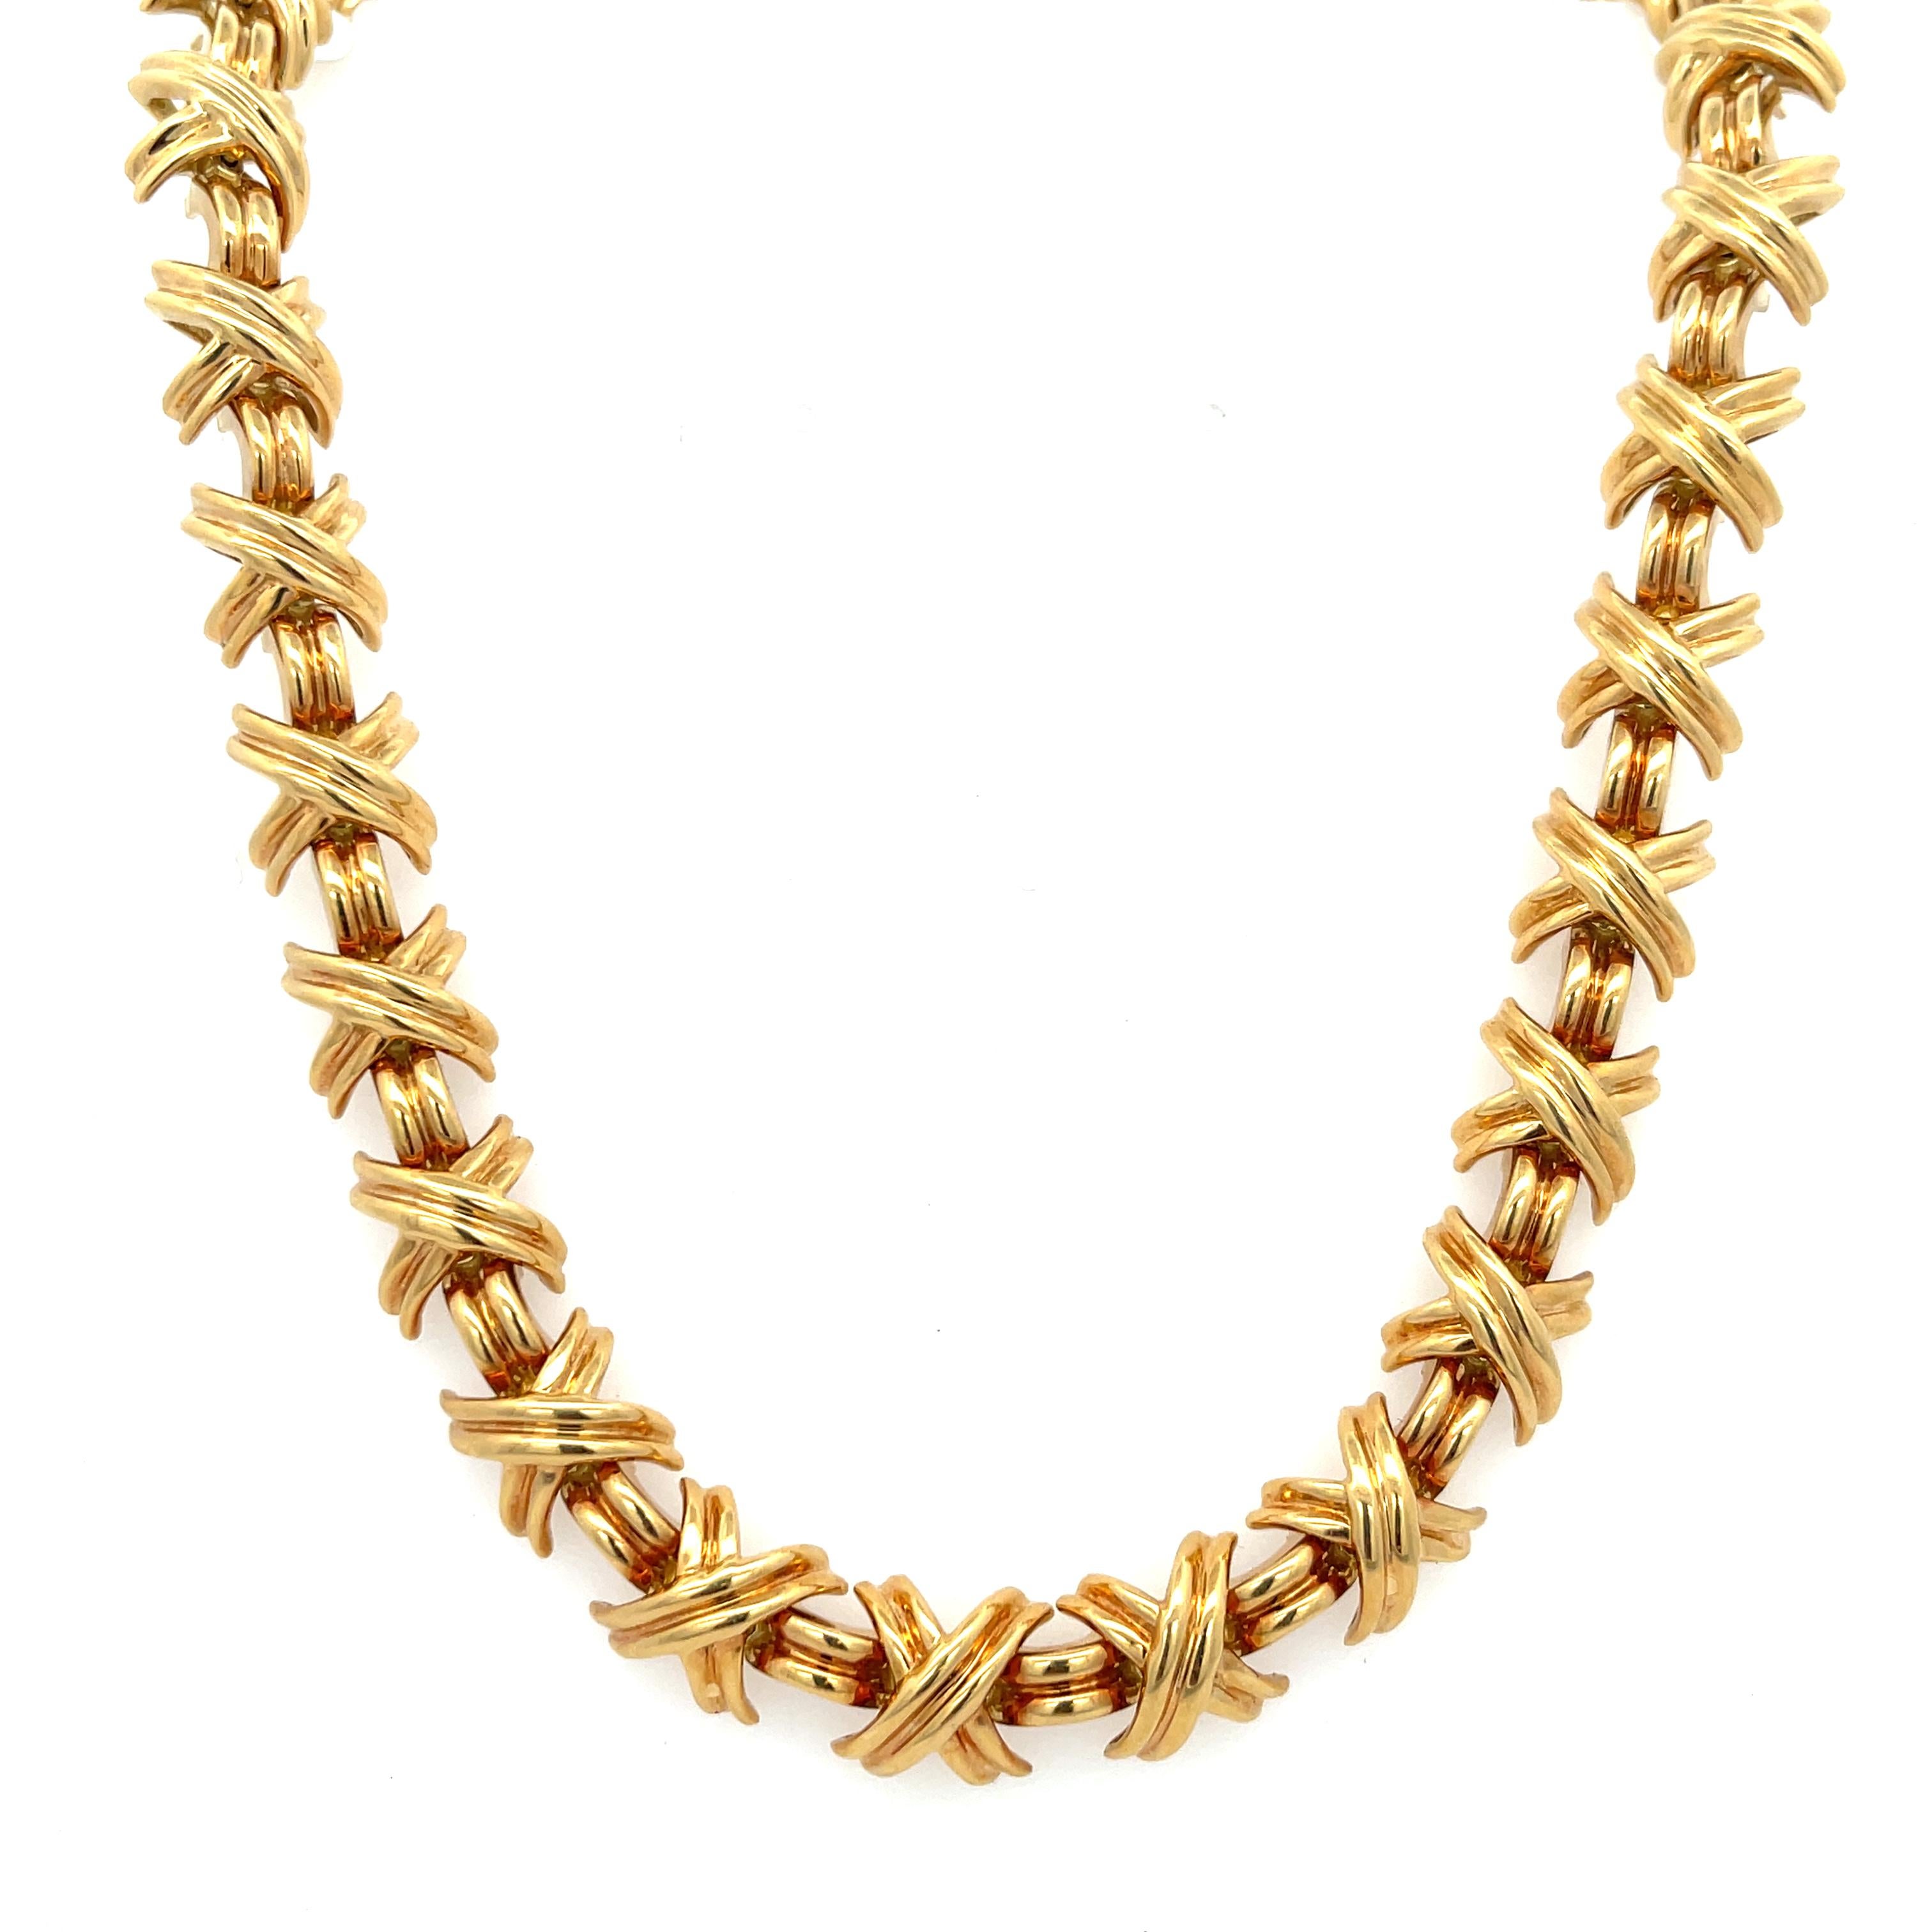 Nachlass Tiffany & Co. Large X Signature Collection'S Halskette aus 18 Karat Gelbgold. Die Halskette ist 16,5 Zoll lang, 3/8 Zoll breit und wiegt 86,5 Gramm. Mit verdecktem Verschluss mit Sicherheitsverriegelung. Singed T&CO 750.